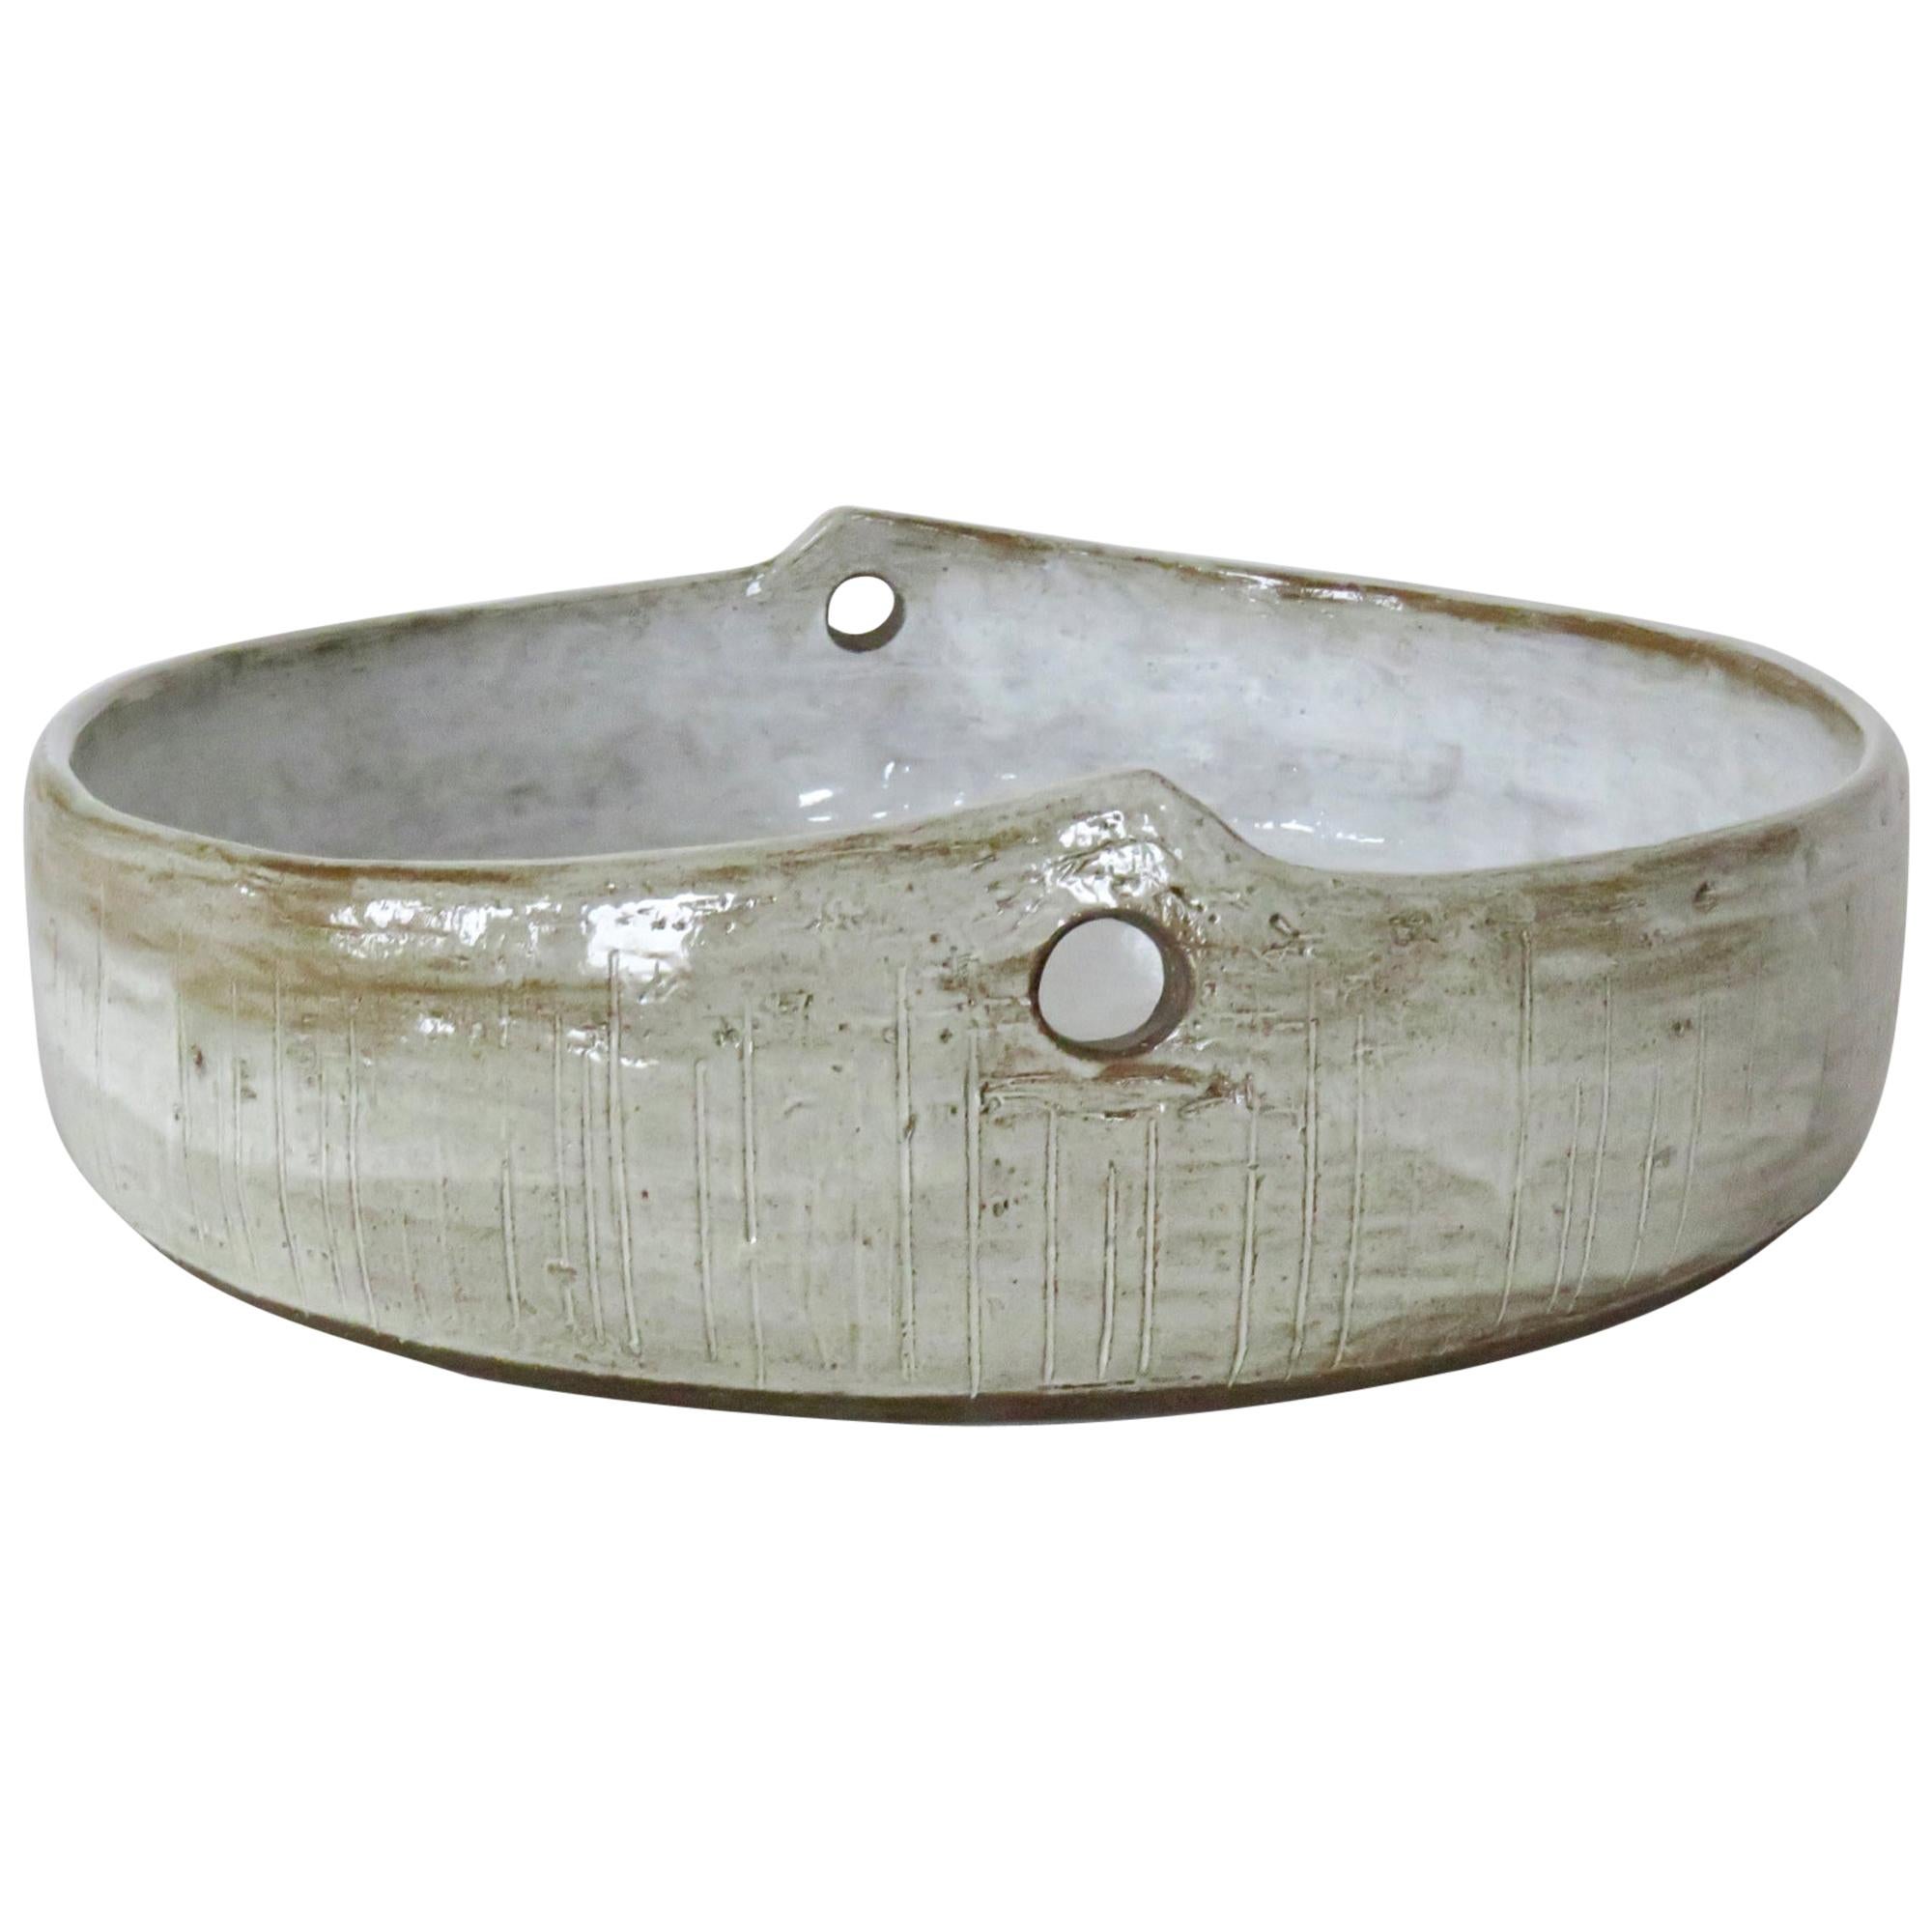 Modern Hand Carved Ceramic Serving Bowl, Mottled Glossy White Glaze, Hand Built